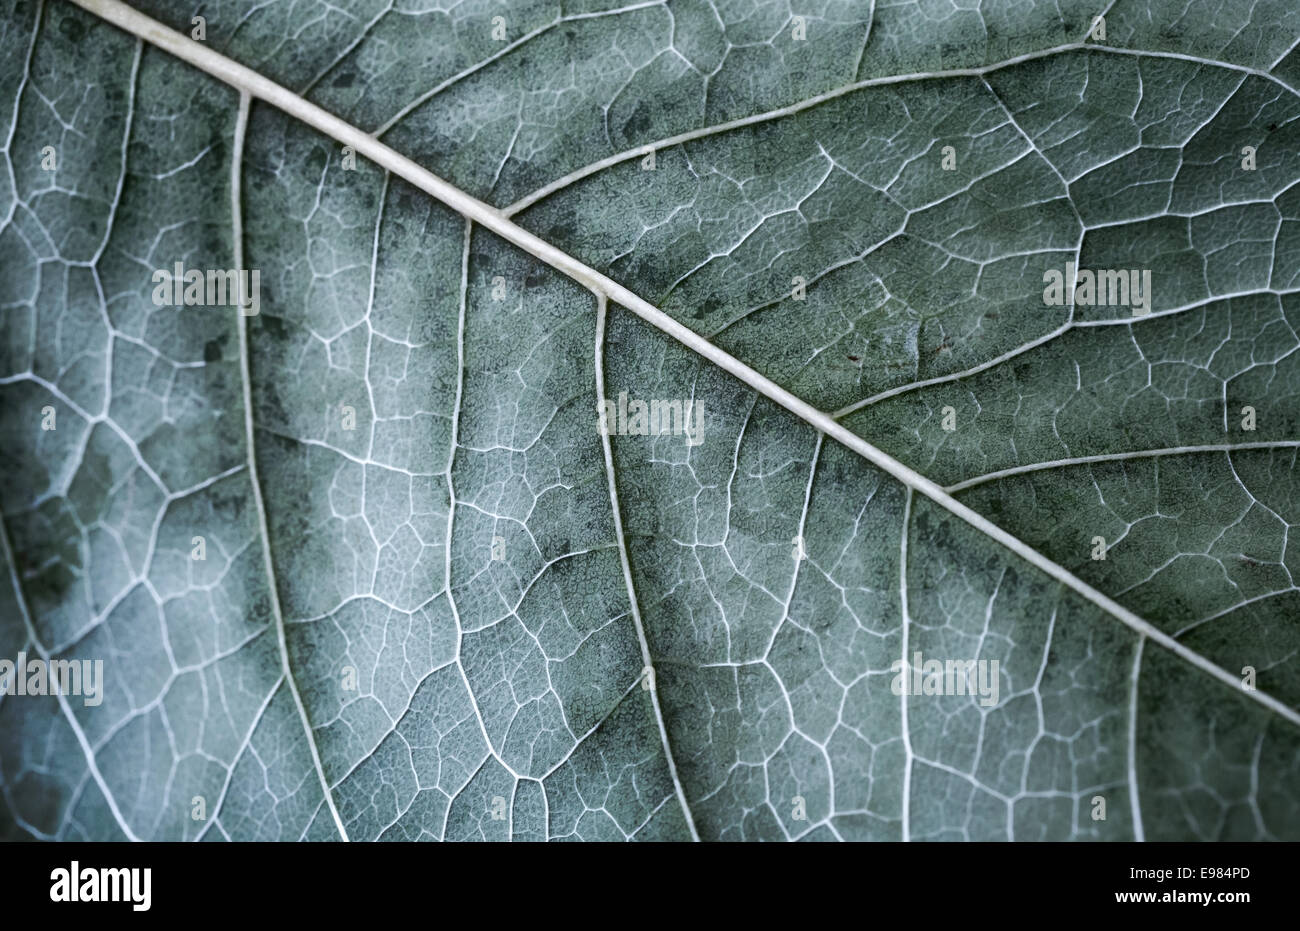 Herbst Baum Blatt, Makro-Foto mit Tiefenschärfe und kalten getönten Effekt Stockfoto